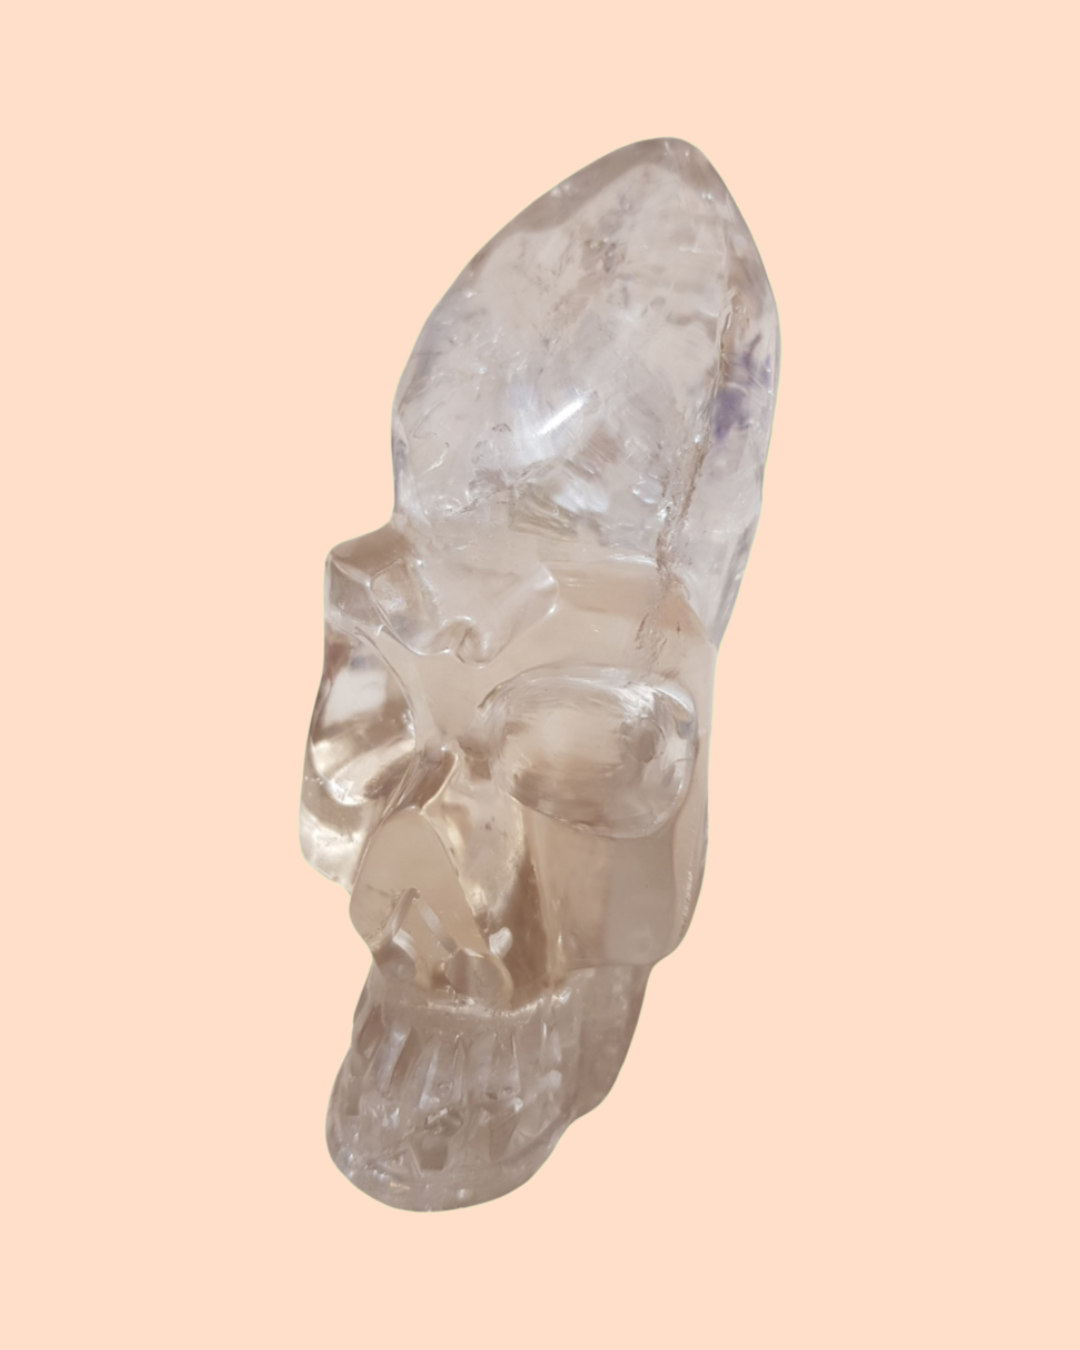 Smoky quartz crystal skull